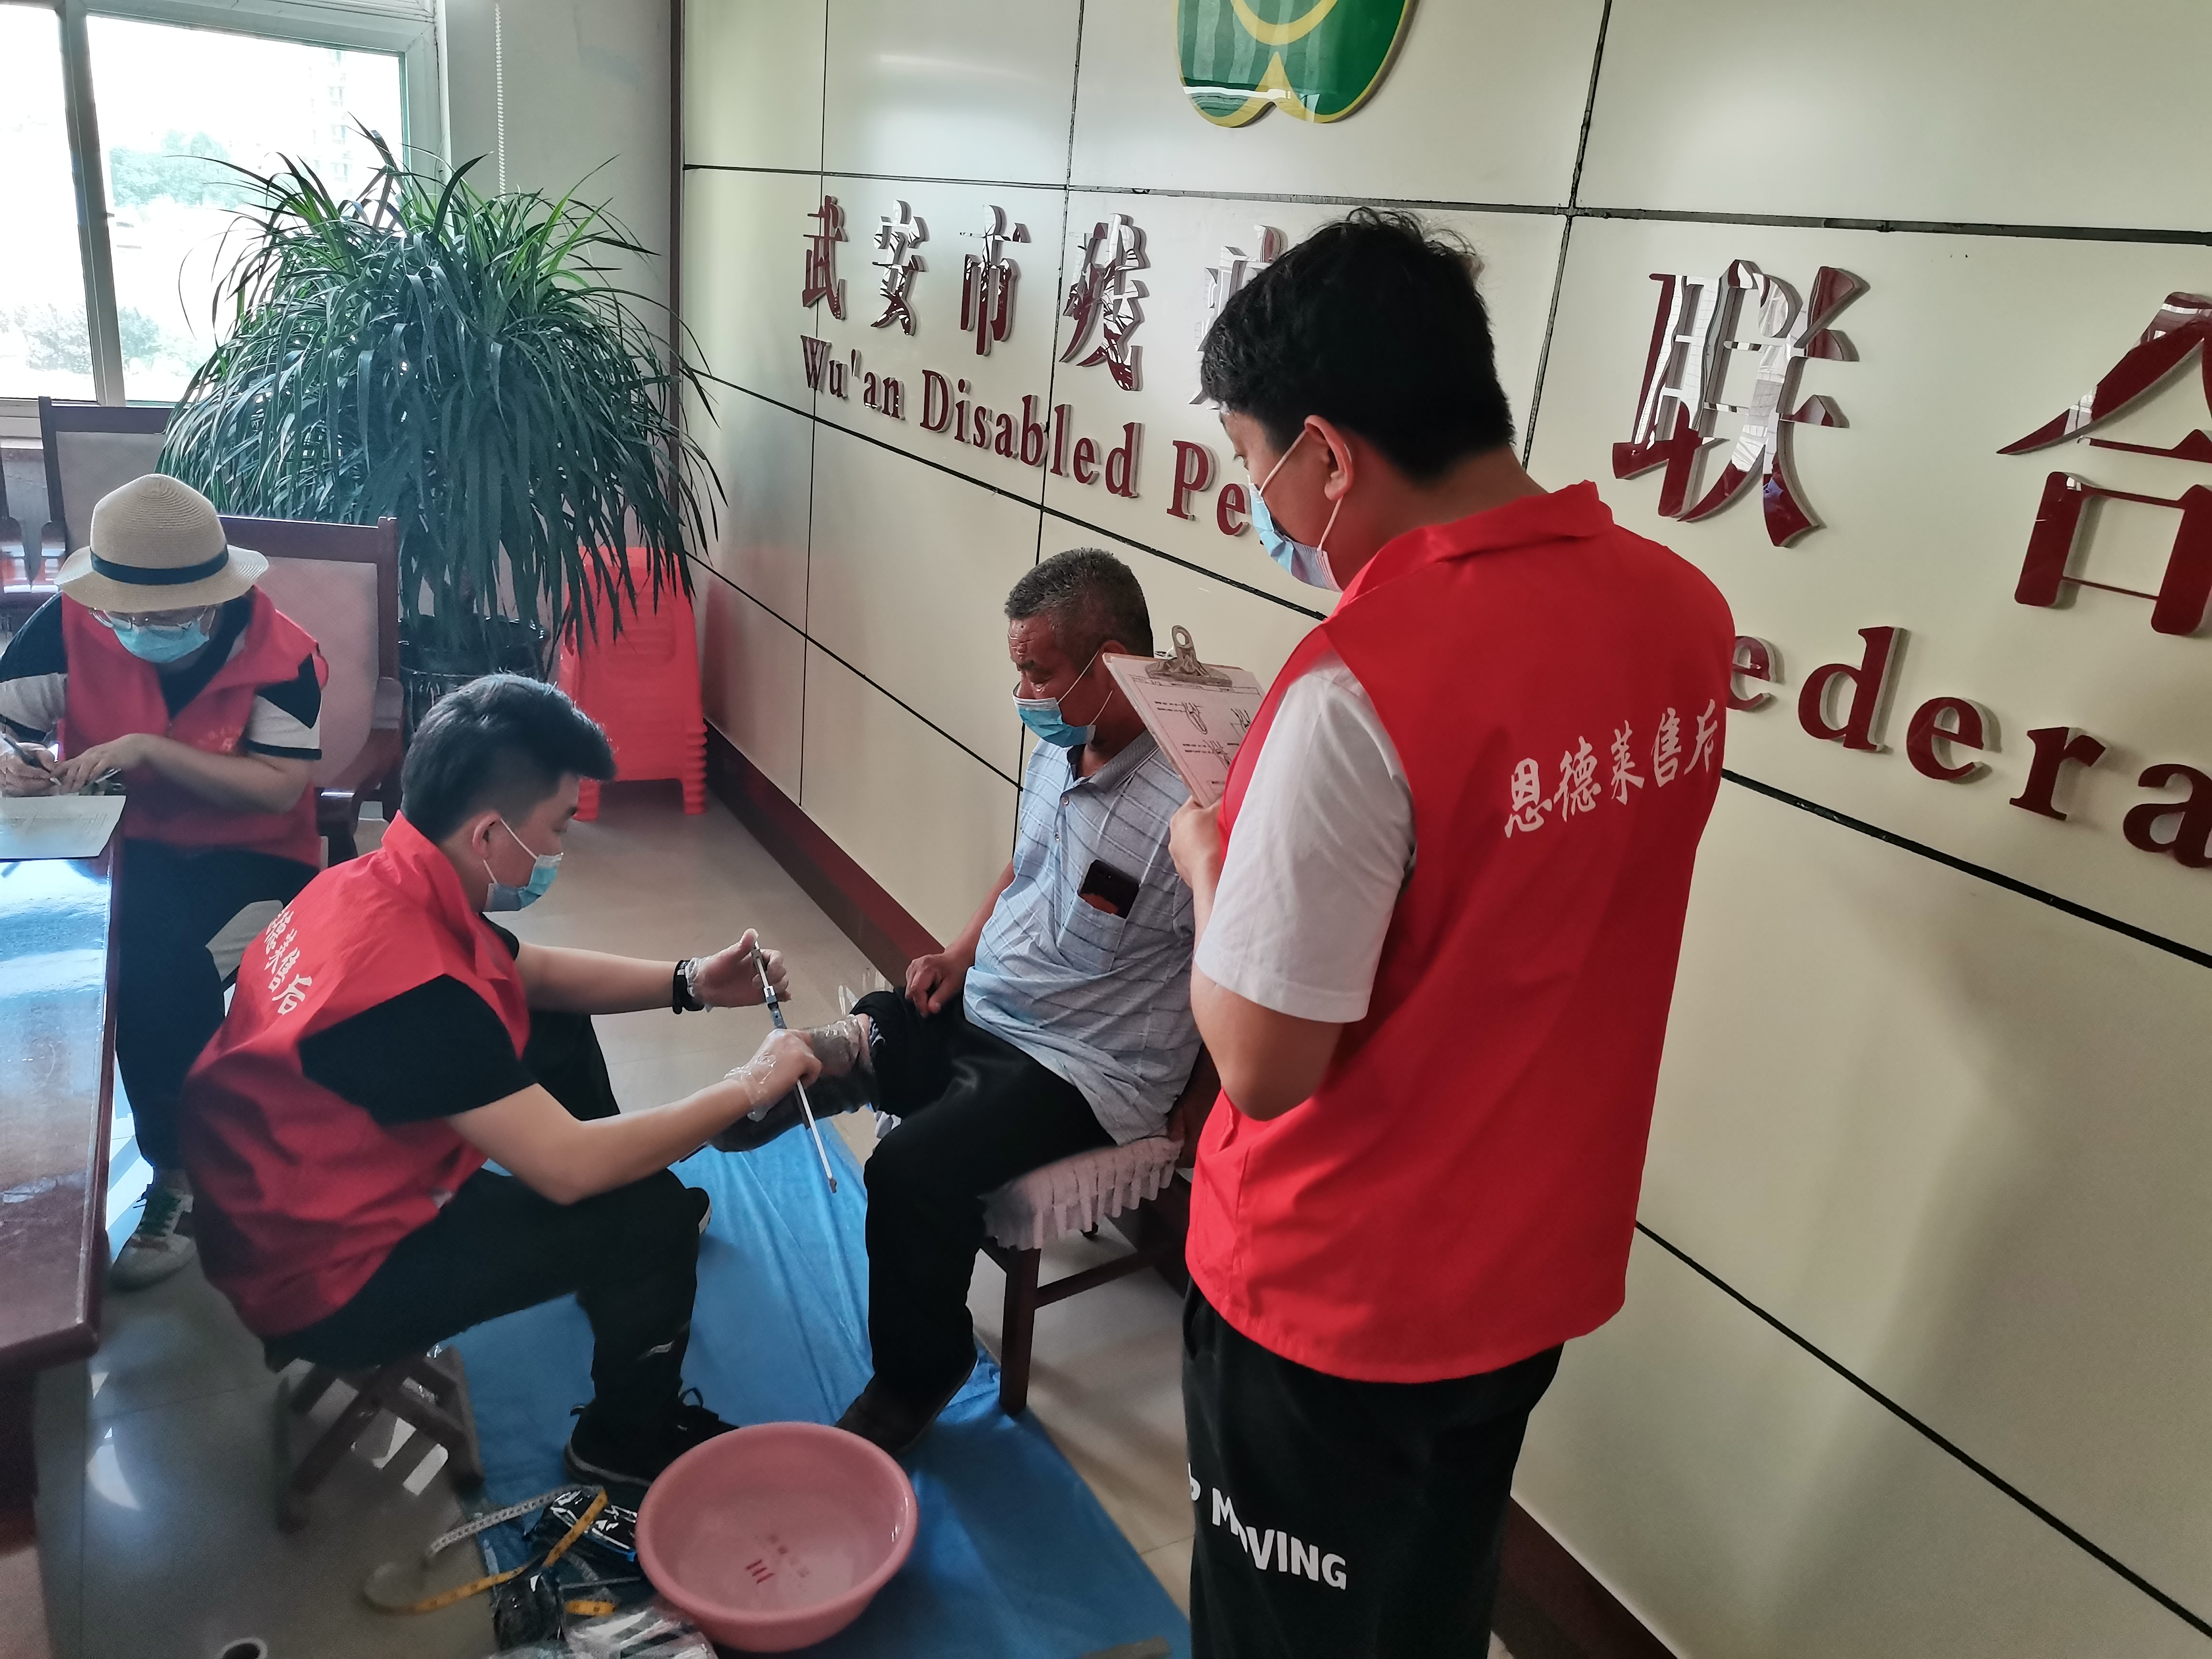 恩德莱邯郸爱心店助力河北省残联开展残疾人假肢适配项目